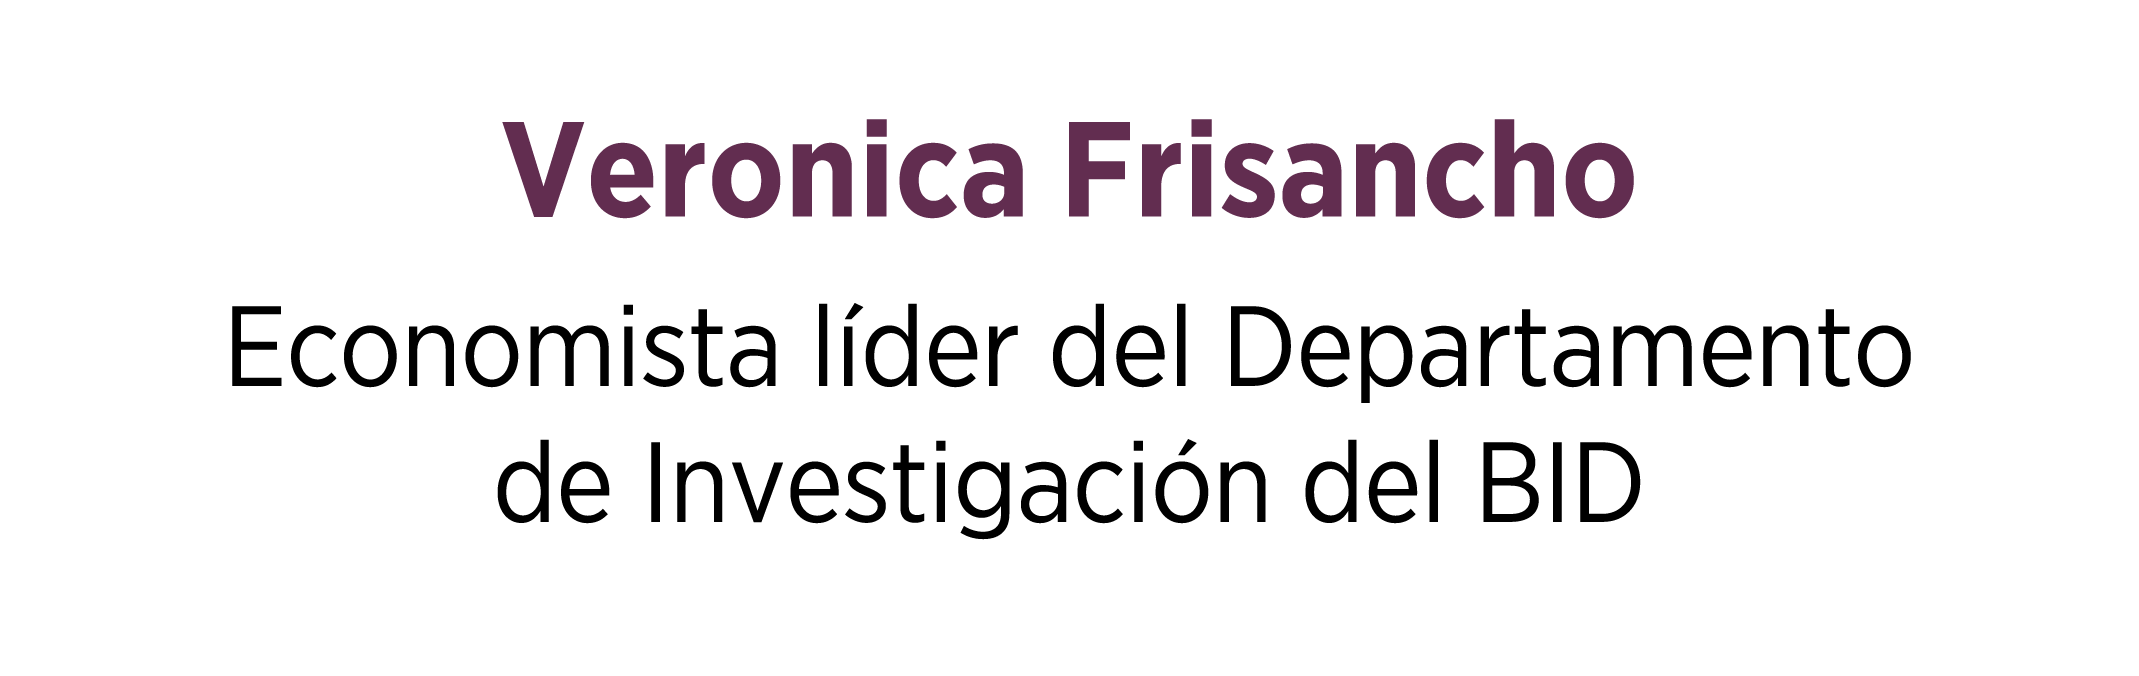 Veronica Frisancho